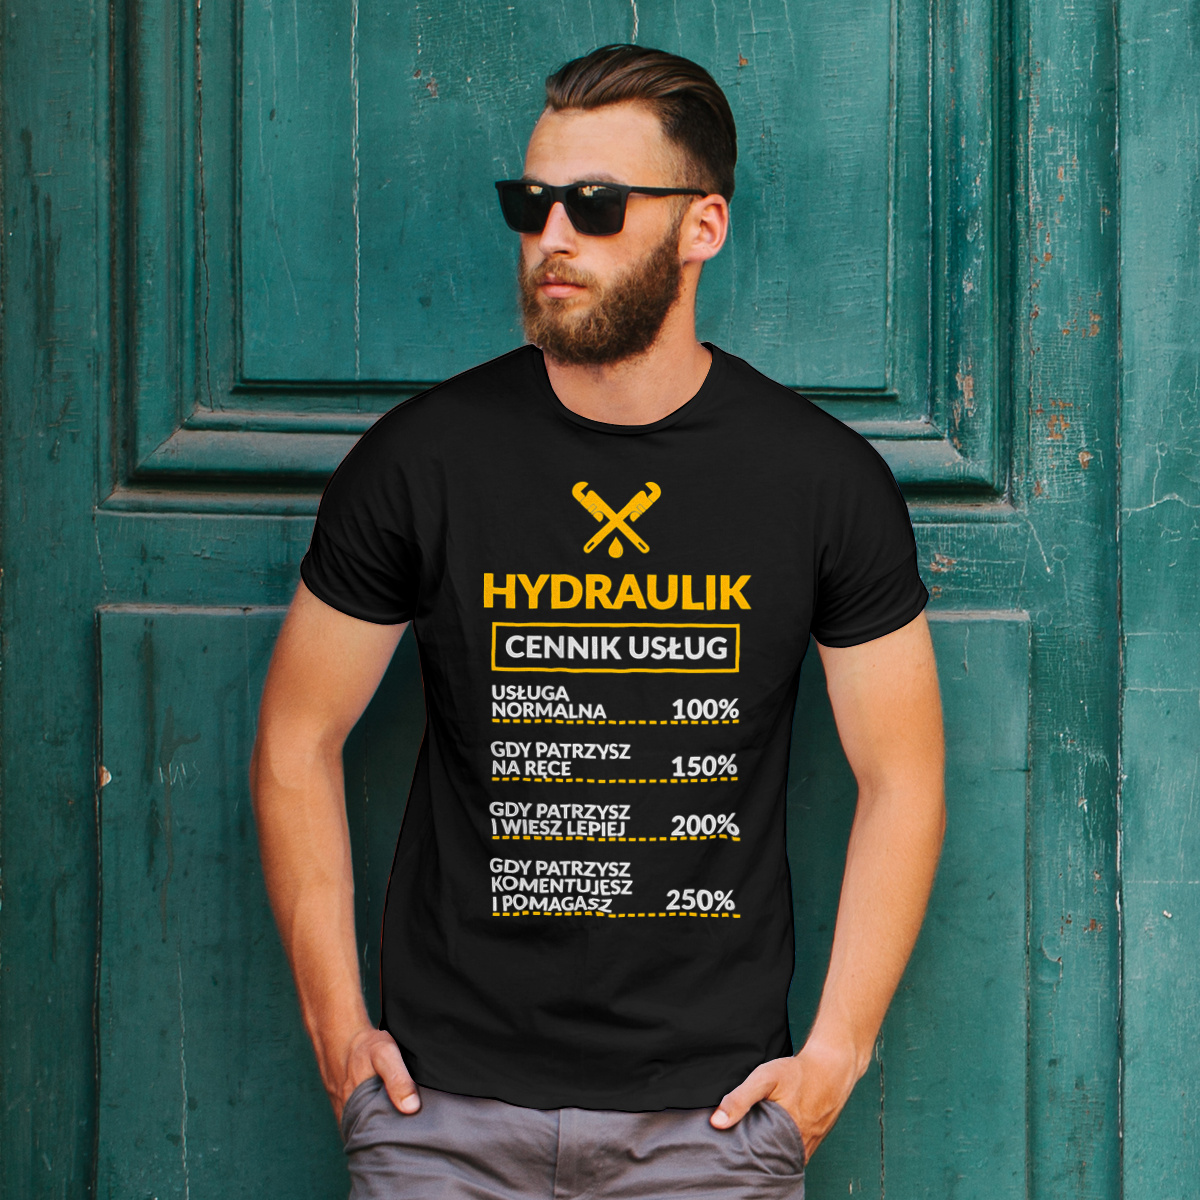 Hydraulik - Cennik Usług - Męska Koszulka Czarna